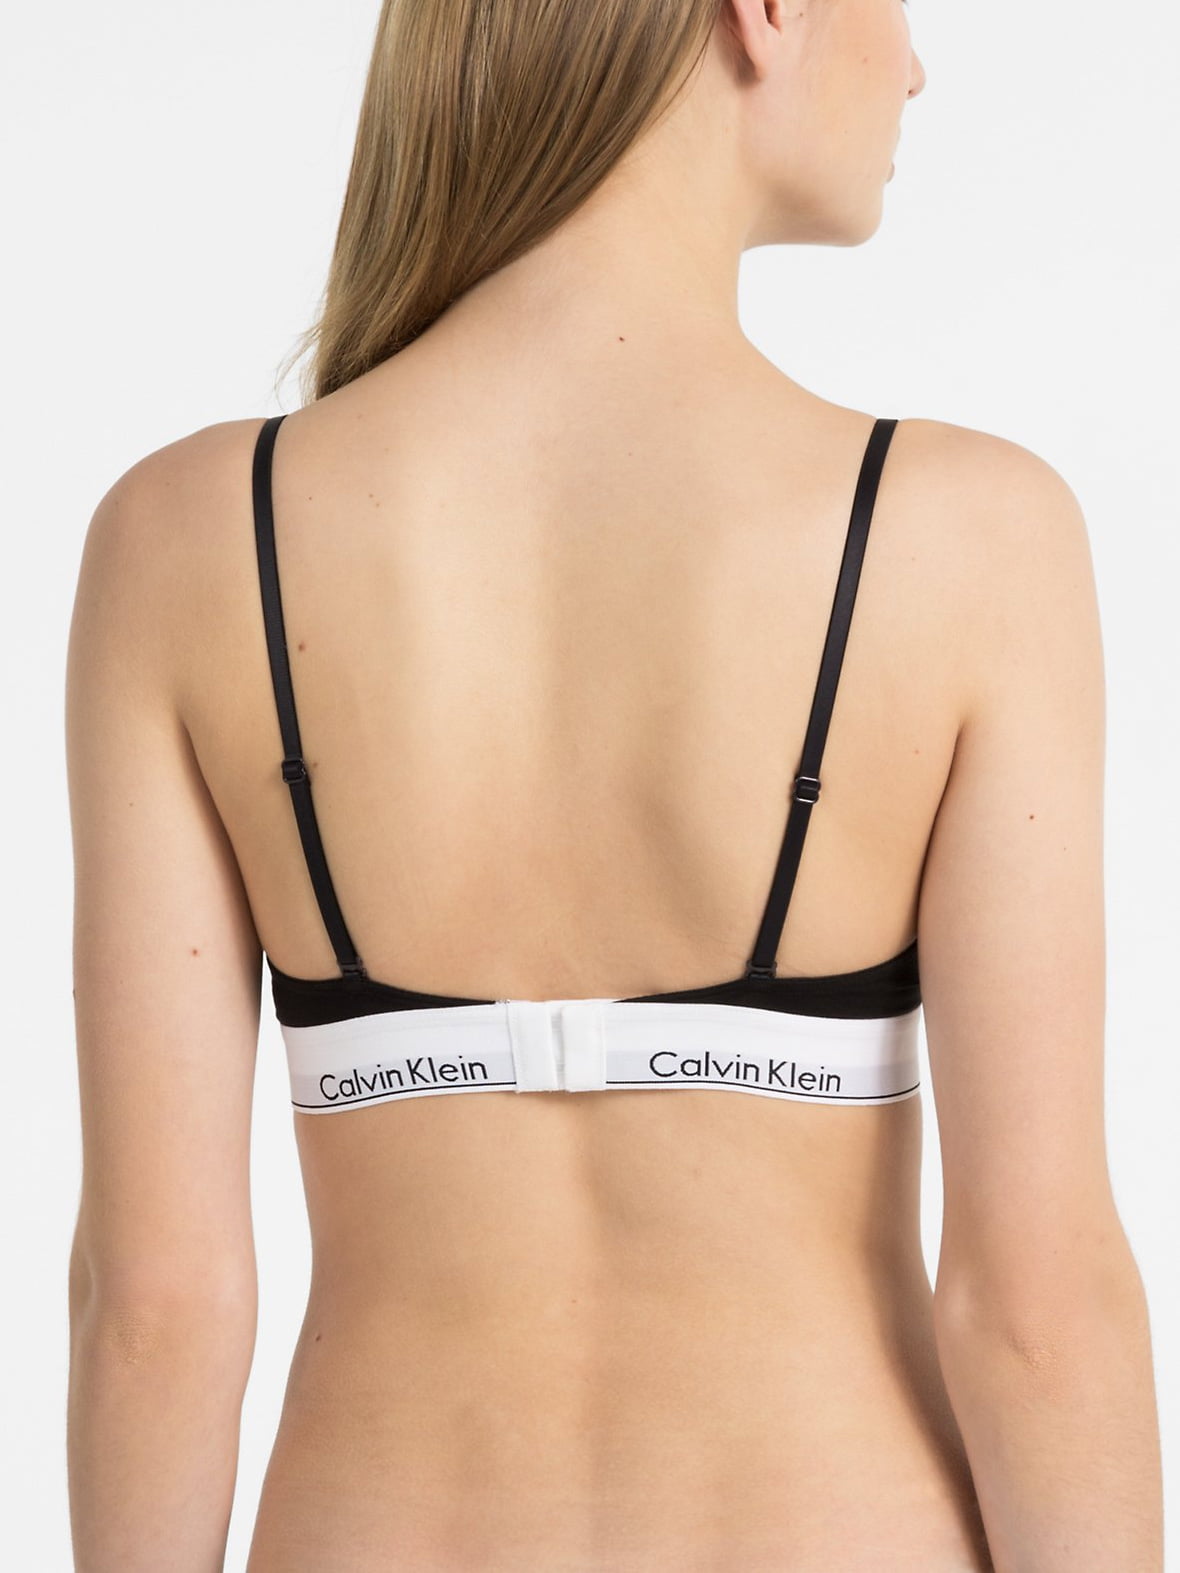 Calvin Klein Modern Cotton Unlined Triangle Bra, Black, Medium